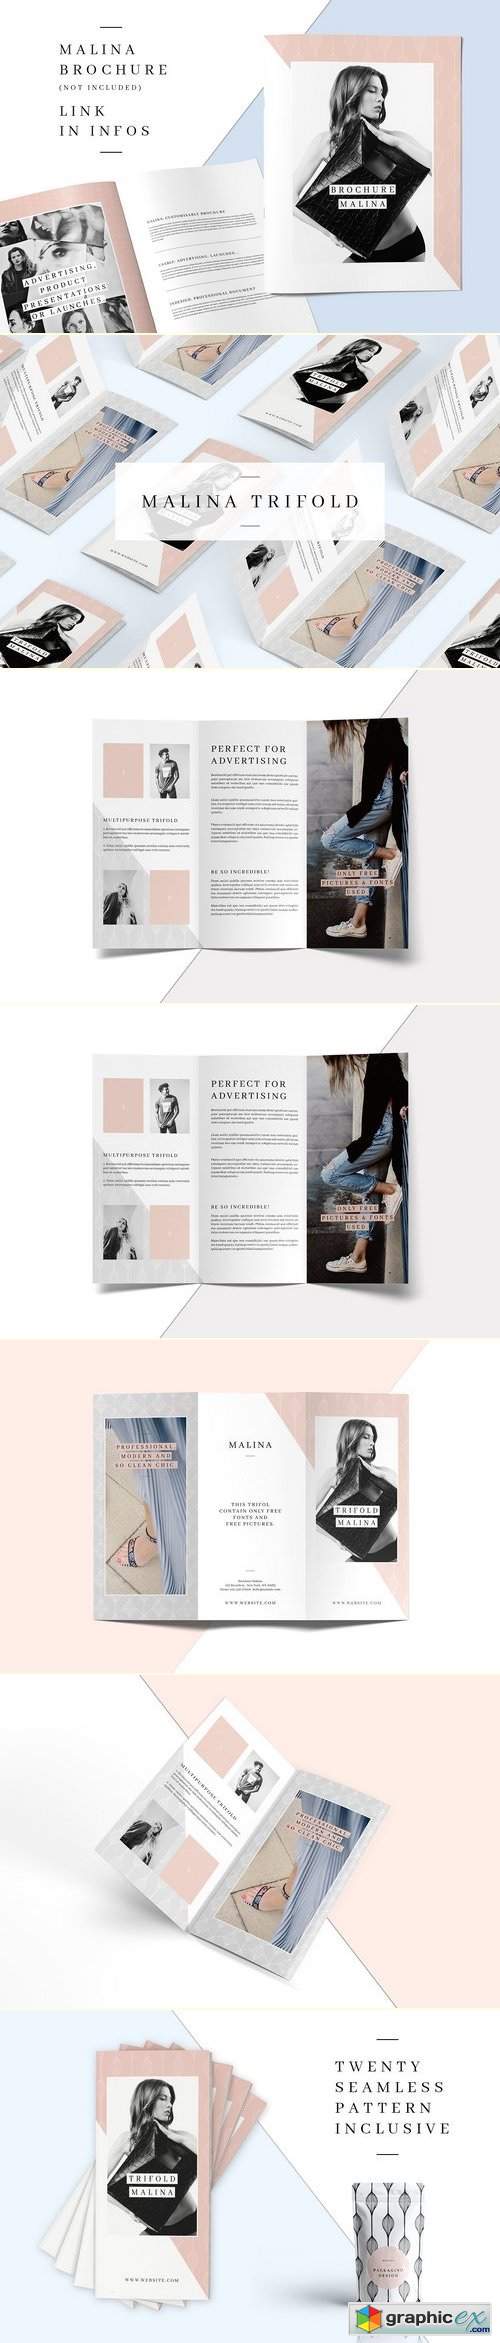 MALINA Trifold Brochure + Pattern